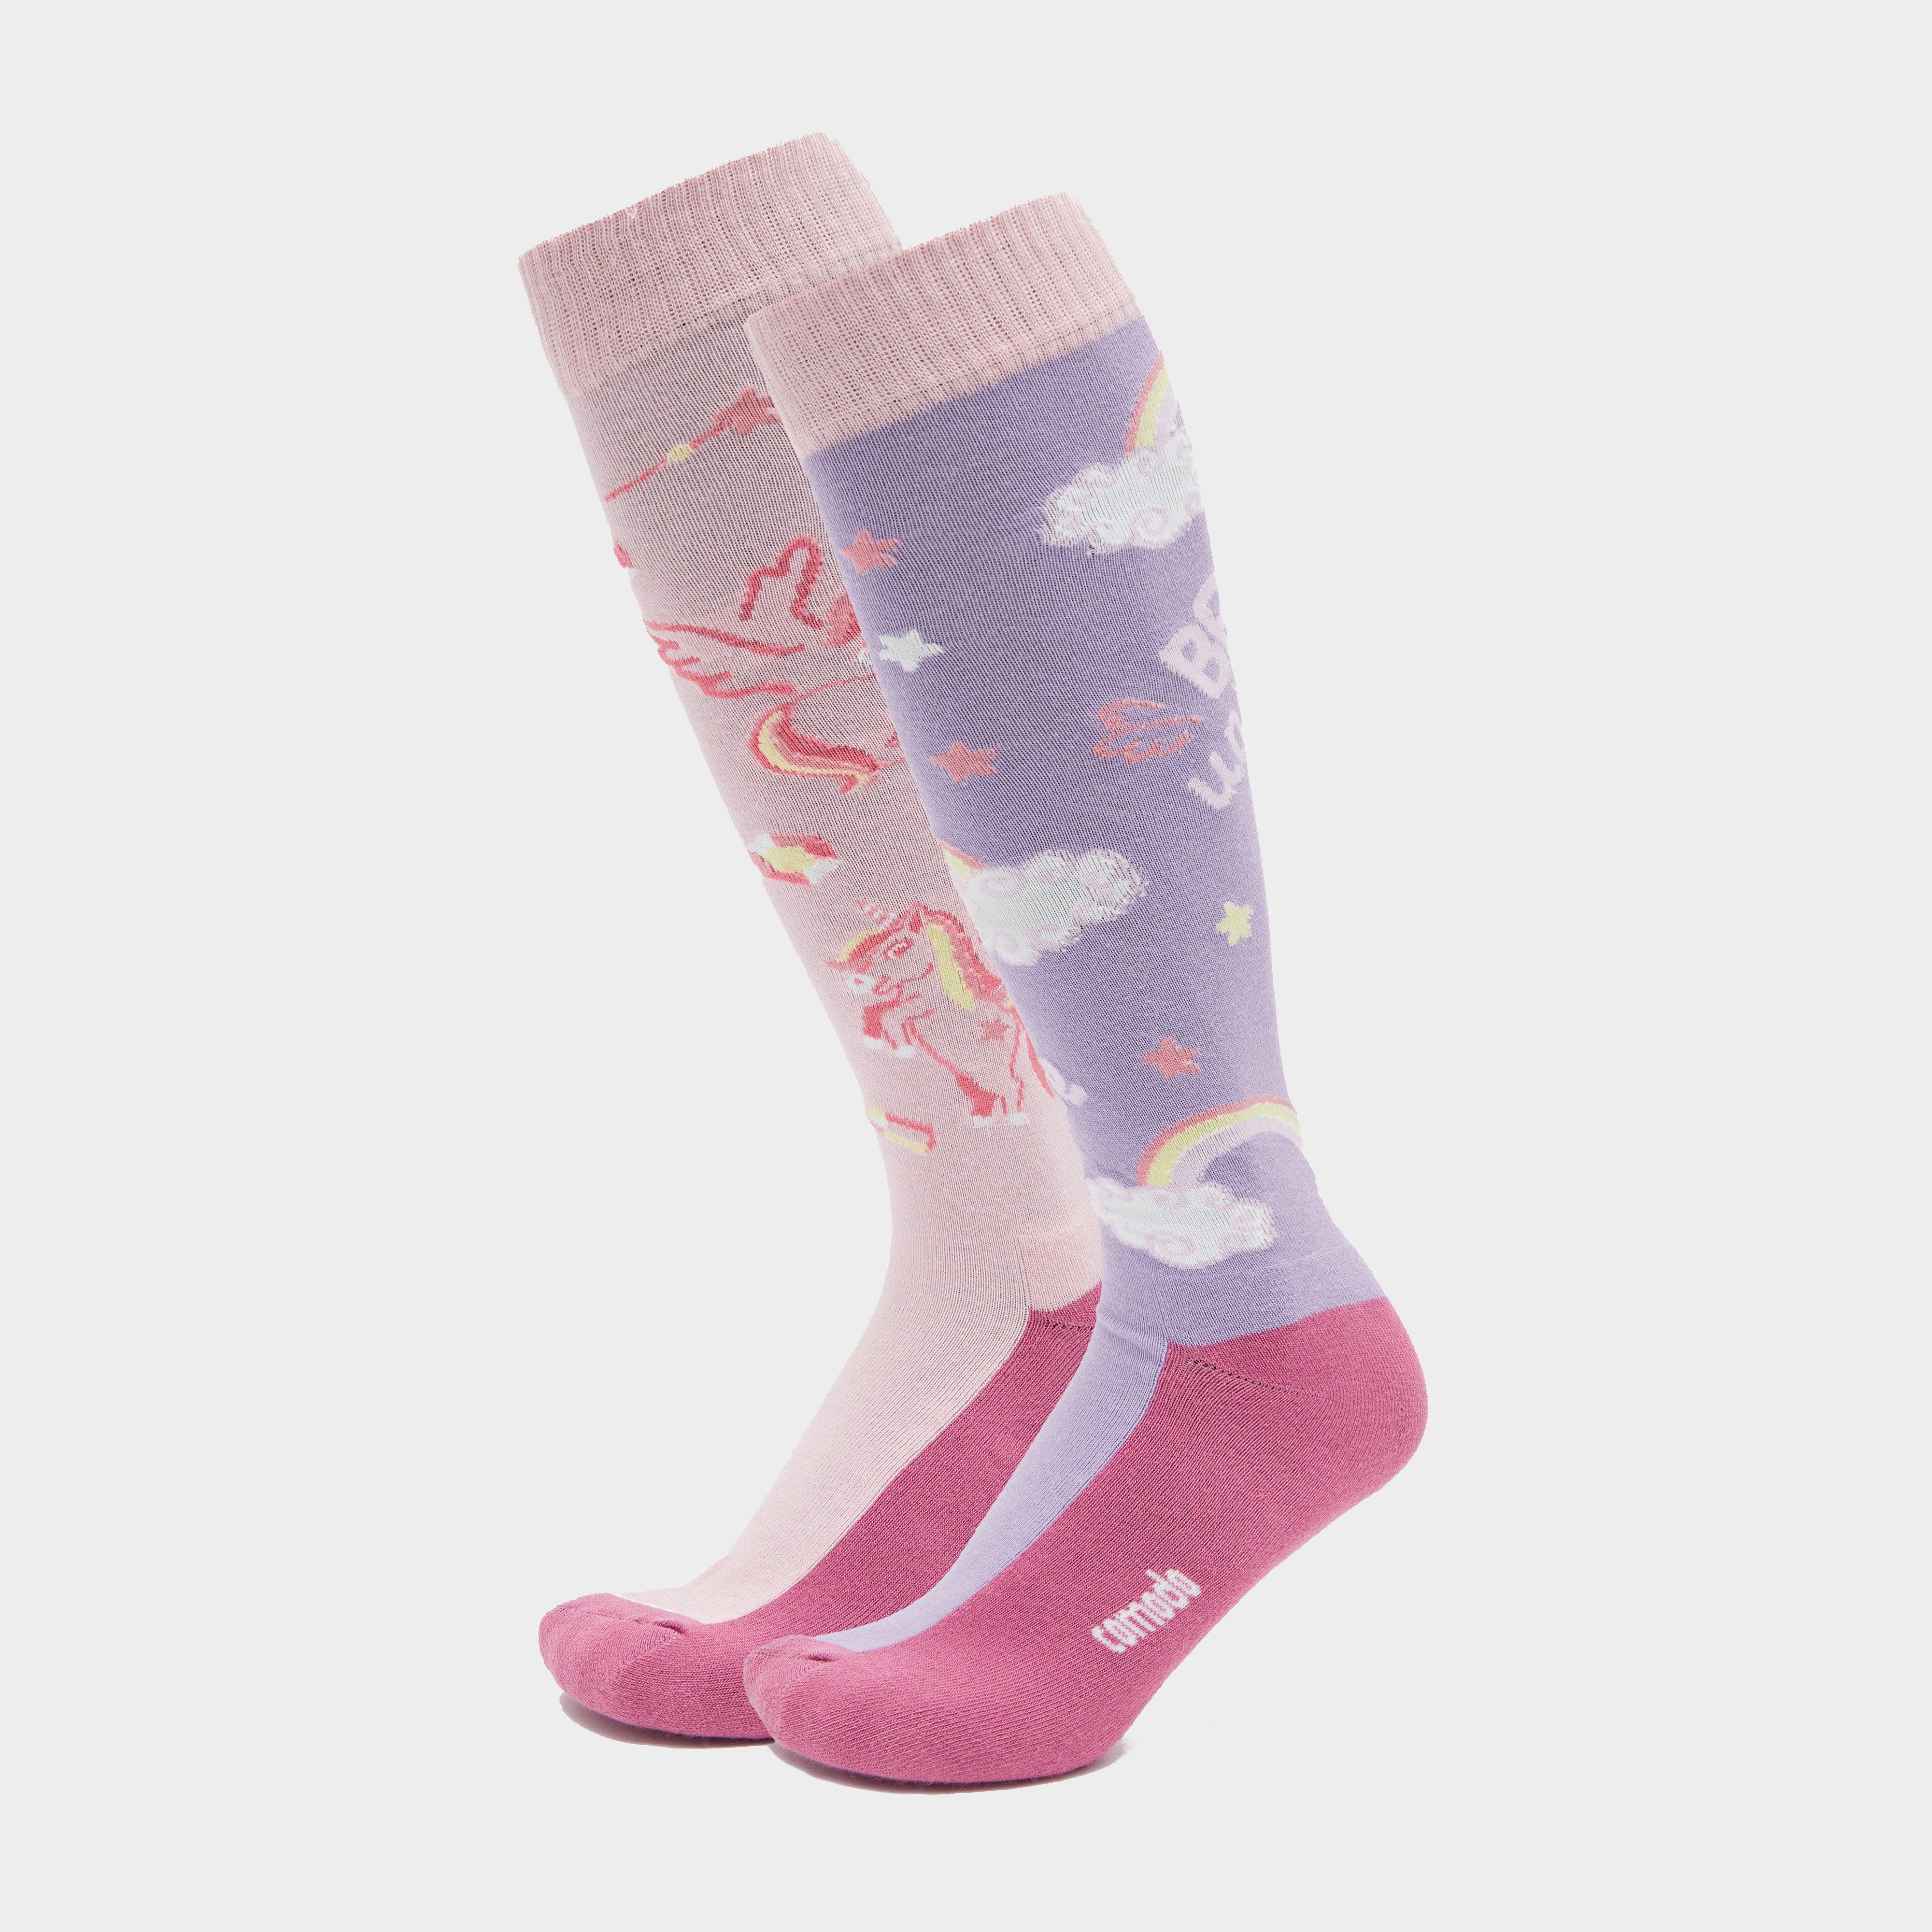 Comodo Kids Novelty Be Unique Socks - Pink/pink  Pink/pink